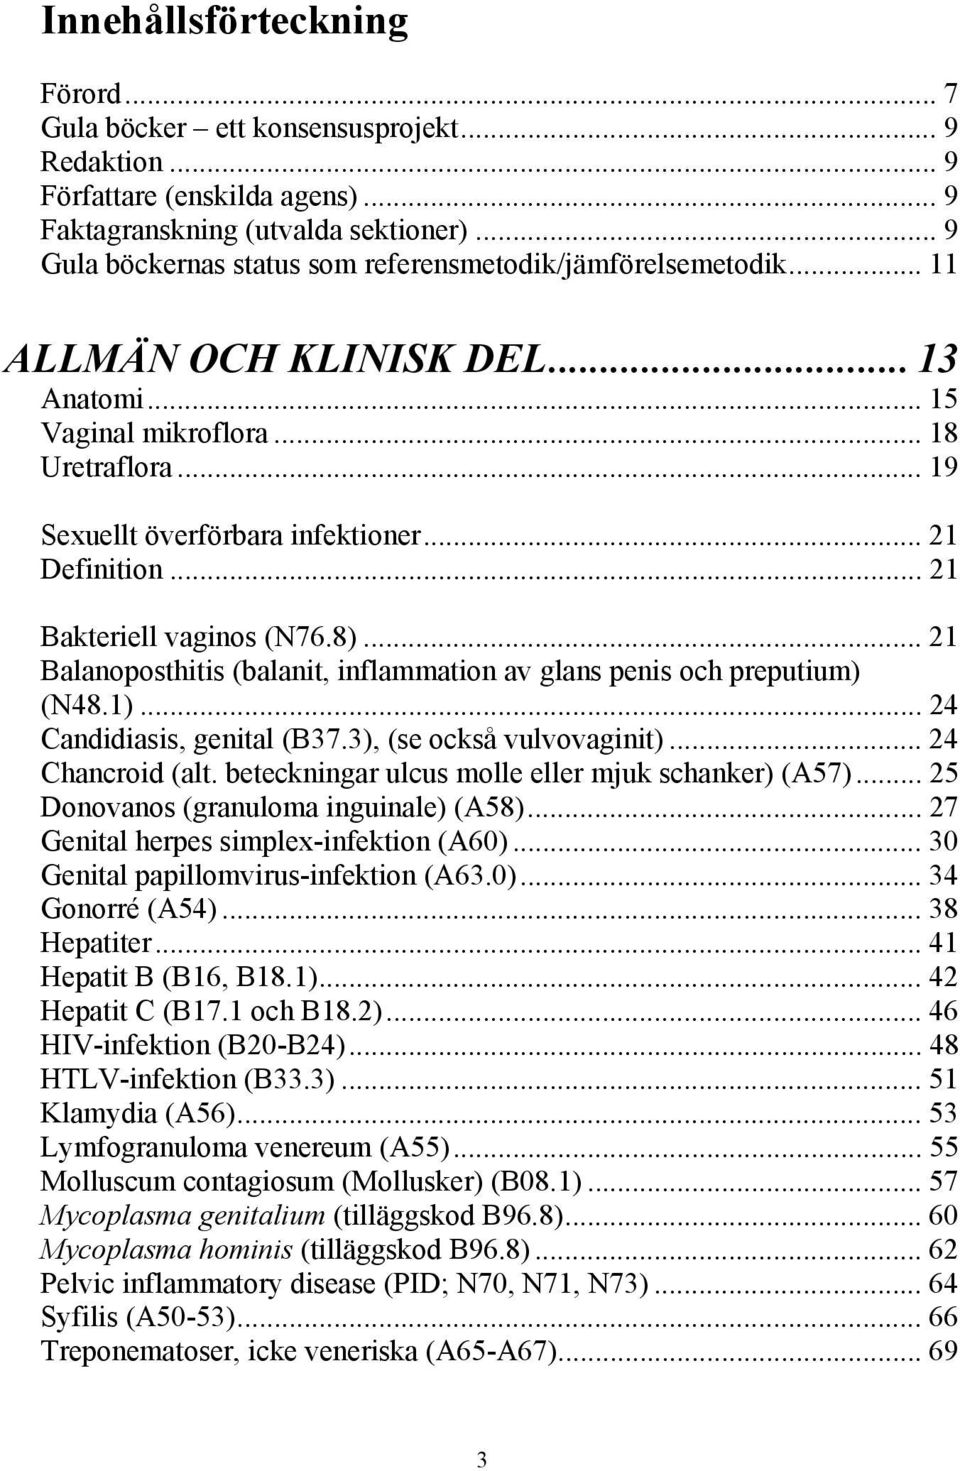 .. 21 Definition... 21 Bakteriell vaginos (N76.8)... 21 Balanoposthitis (balanit, inflammation av glans penis och preputium) (N48.1)... 24 Candidiasis, genital (B37.3), (se också vulvovaginit).